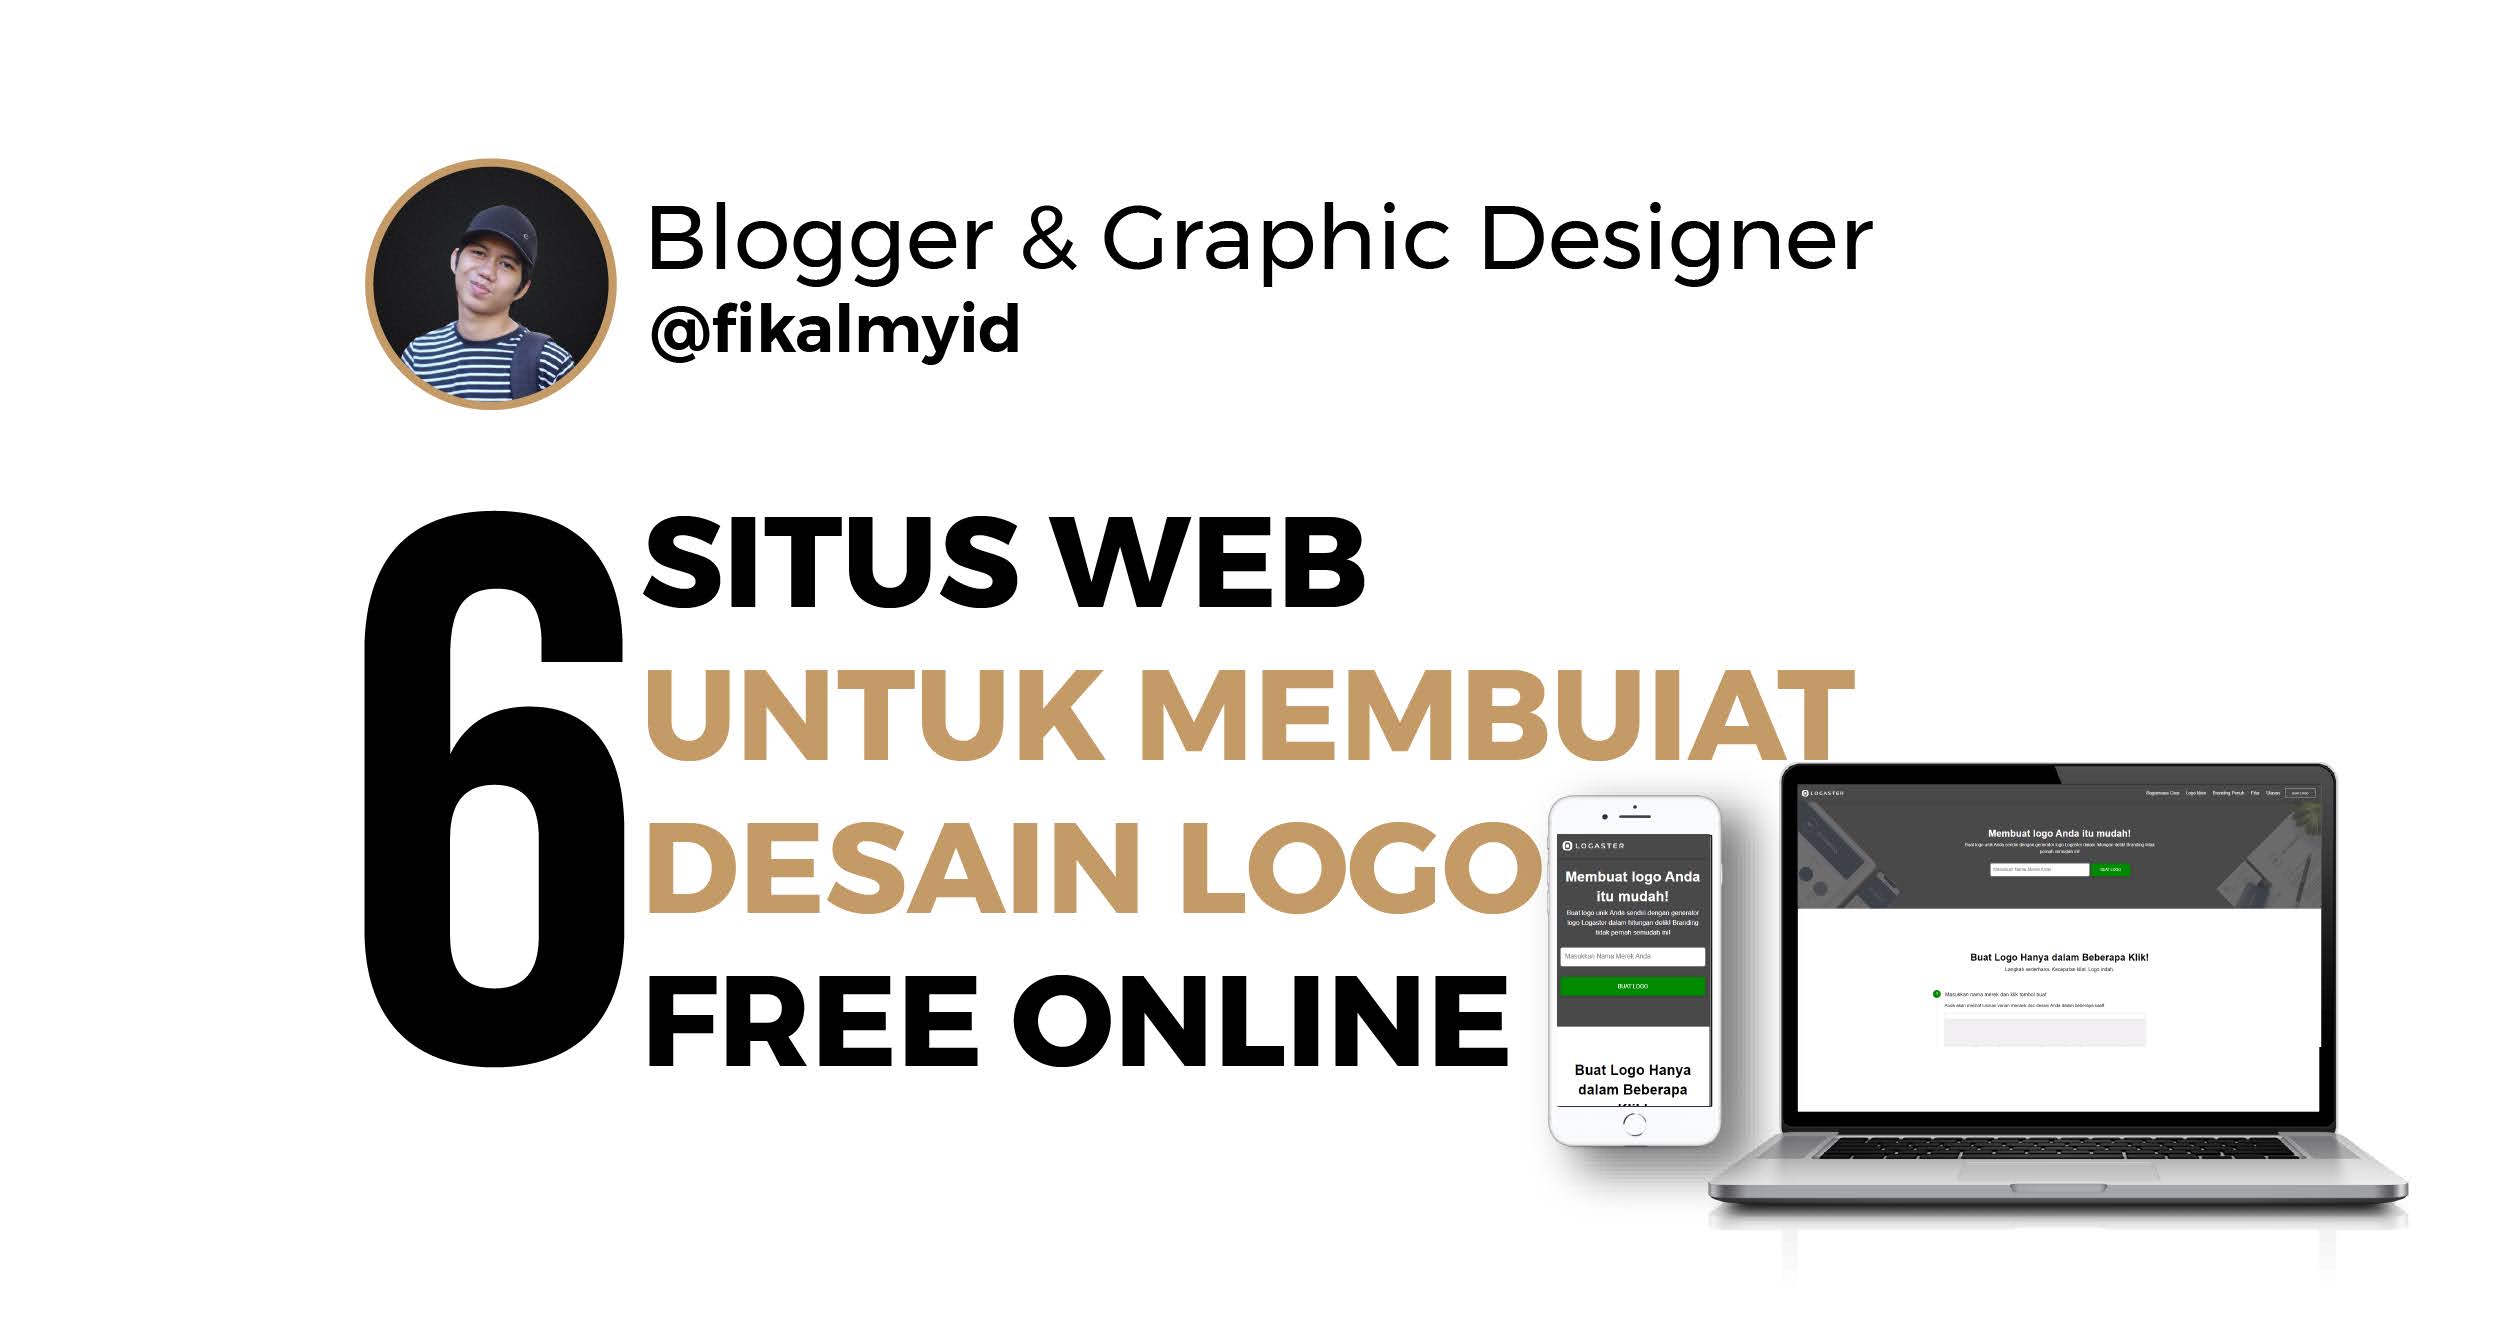 6 Situs  Web Untuk Membuat Desain  Logo Free Online  